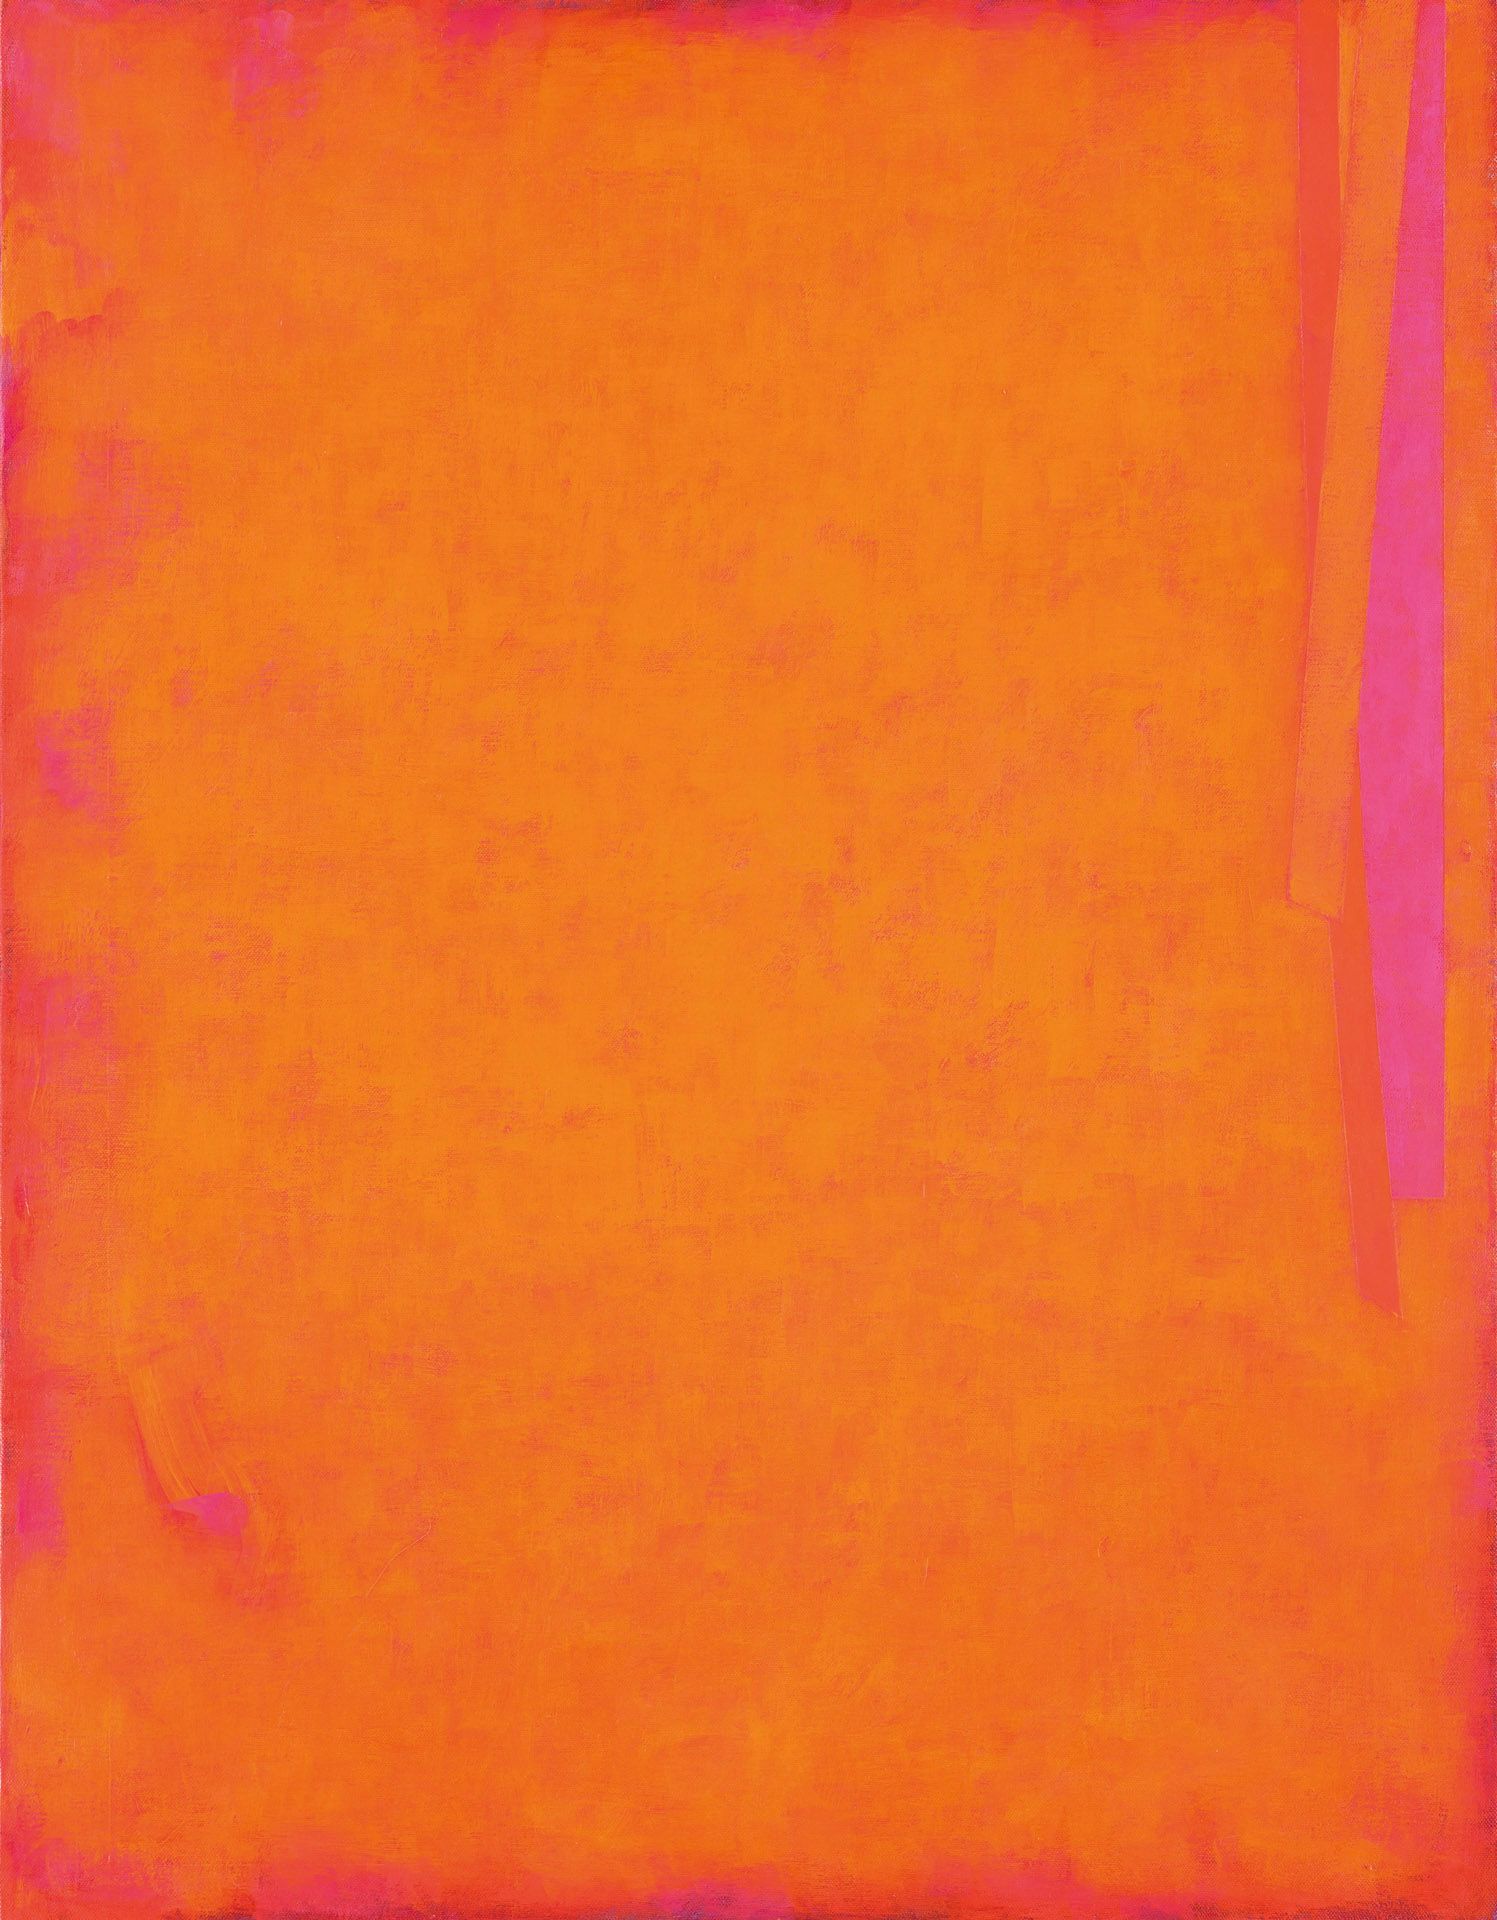 CLAUDIO VERNA (Guardiagrele 1937) Sensus 2, 2009; Acrylic on canvas, 90 x 70 cm
&hellip;